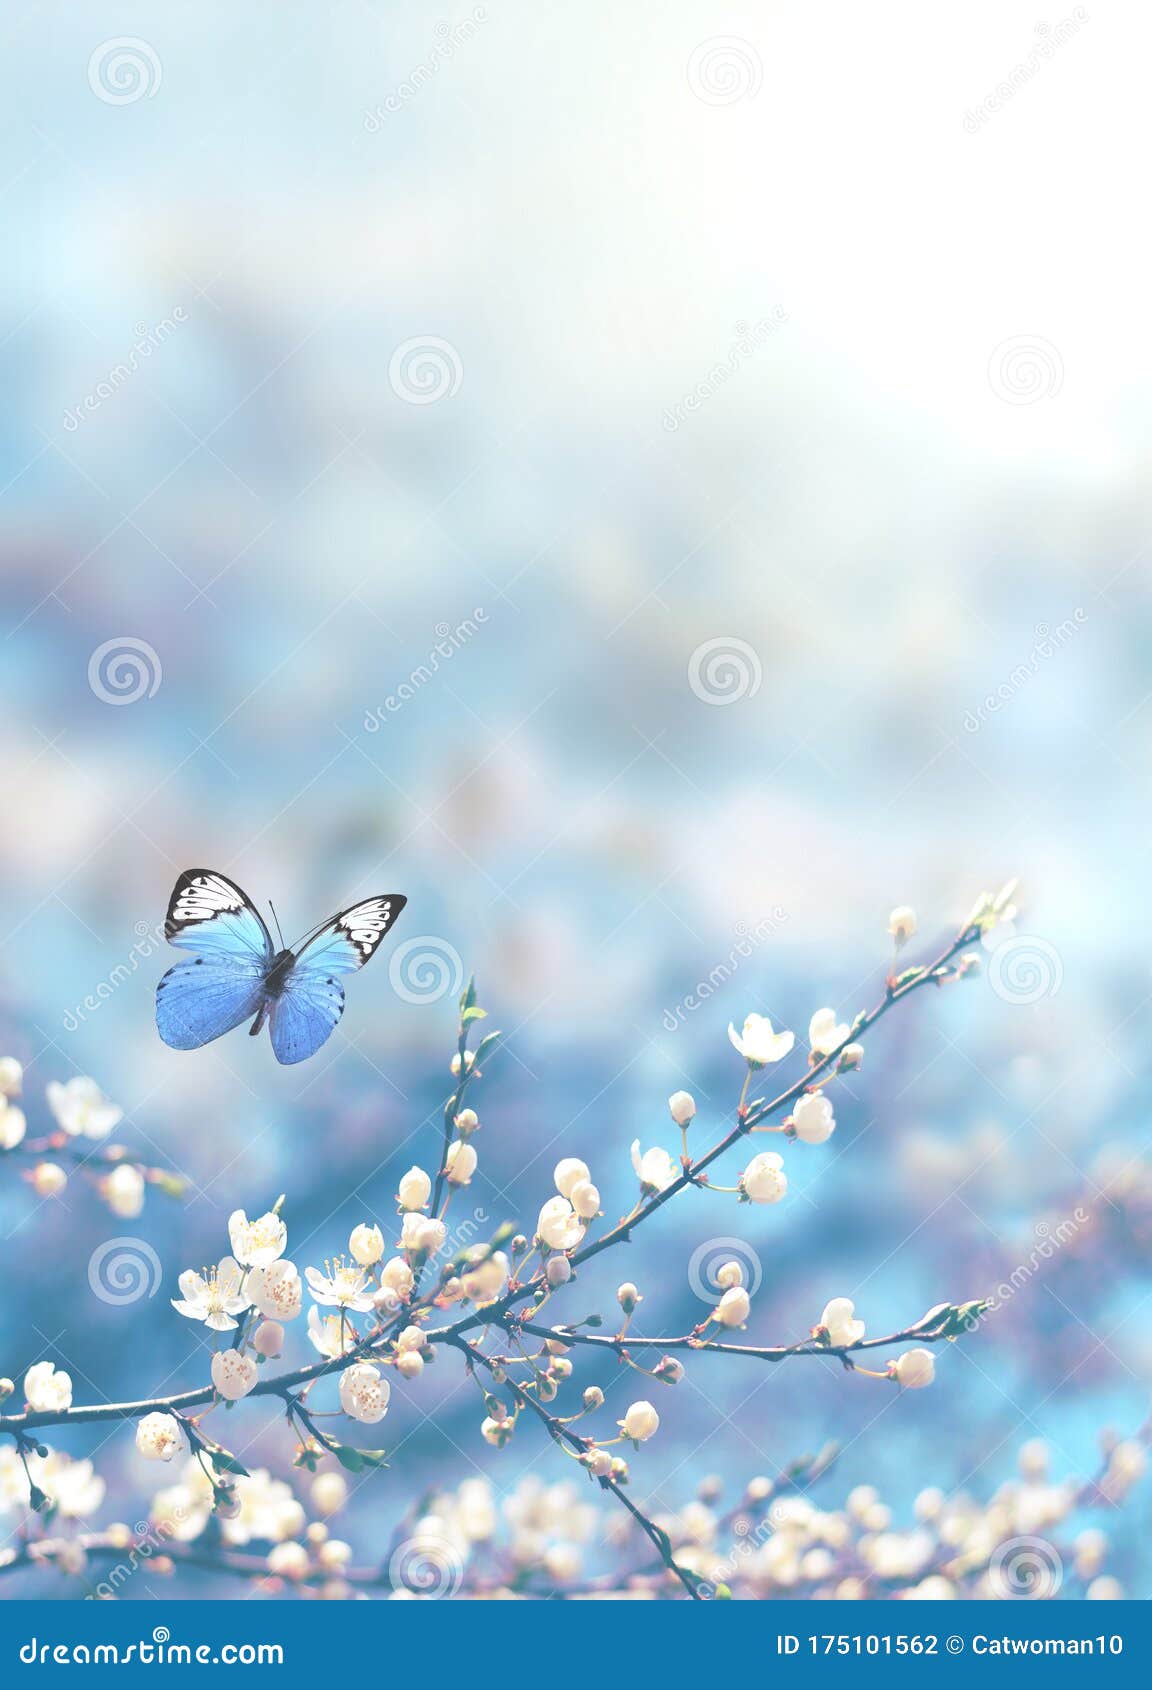 Sự kết hợp hoàn hảo giữa hoa anh đào rực rỡ và nền thiên nhiên màu xanh dương tạo nên bức hình nền hoàn hảo. Đó là một bức hình như thế nào? Hãy khám phá và trải nghiệm ngay trên trang web của chúng tôi.